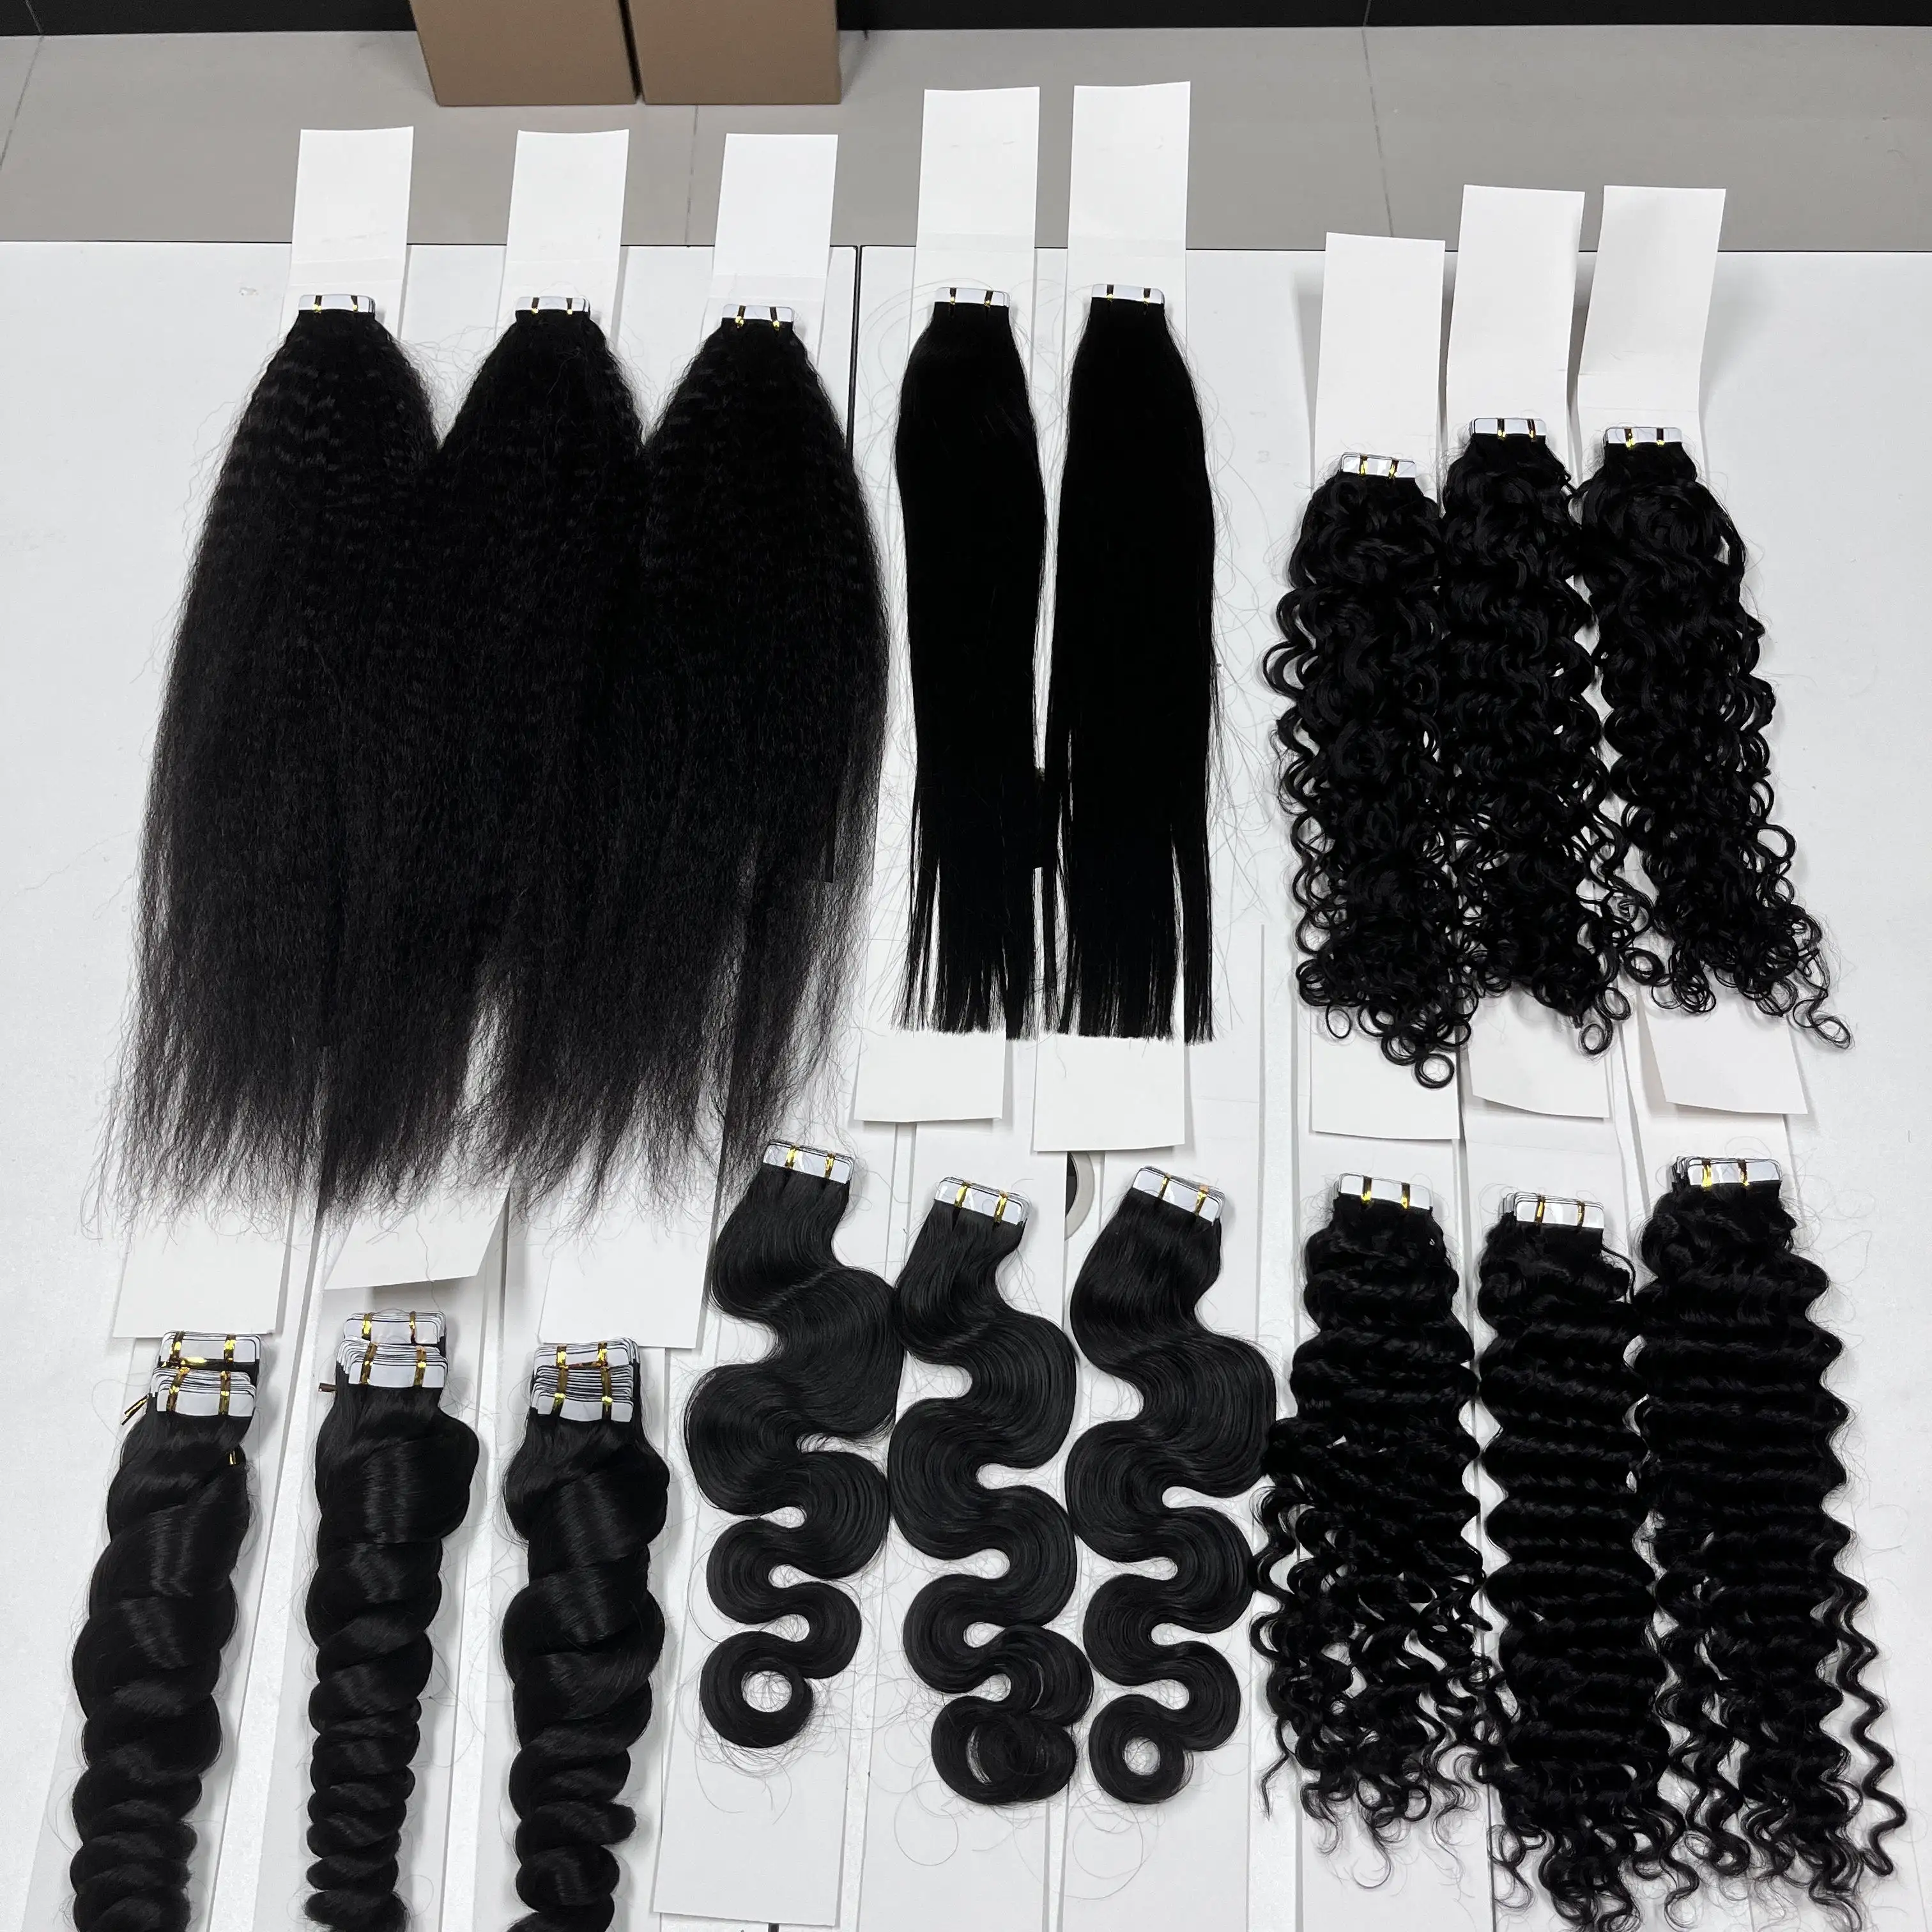 Extensions de cheveux humains brésiliens vierges Remy, couleur naturelle 100%, cuticule alignée, 20 pièces